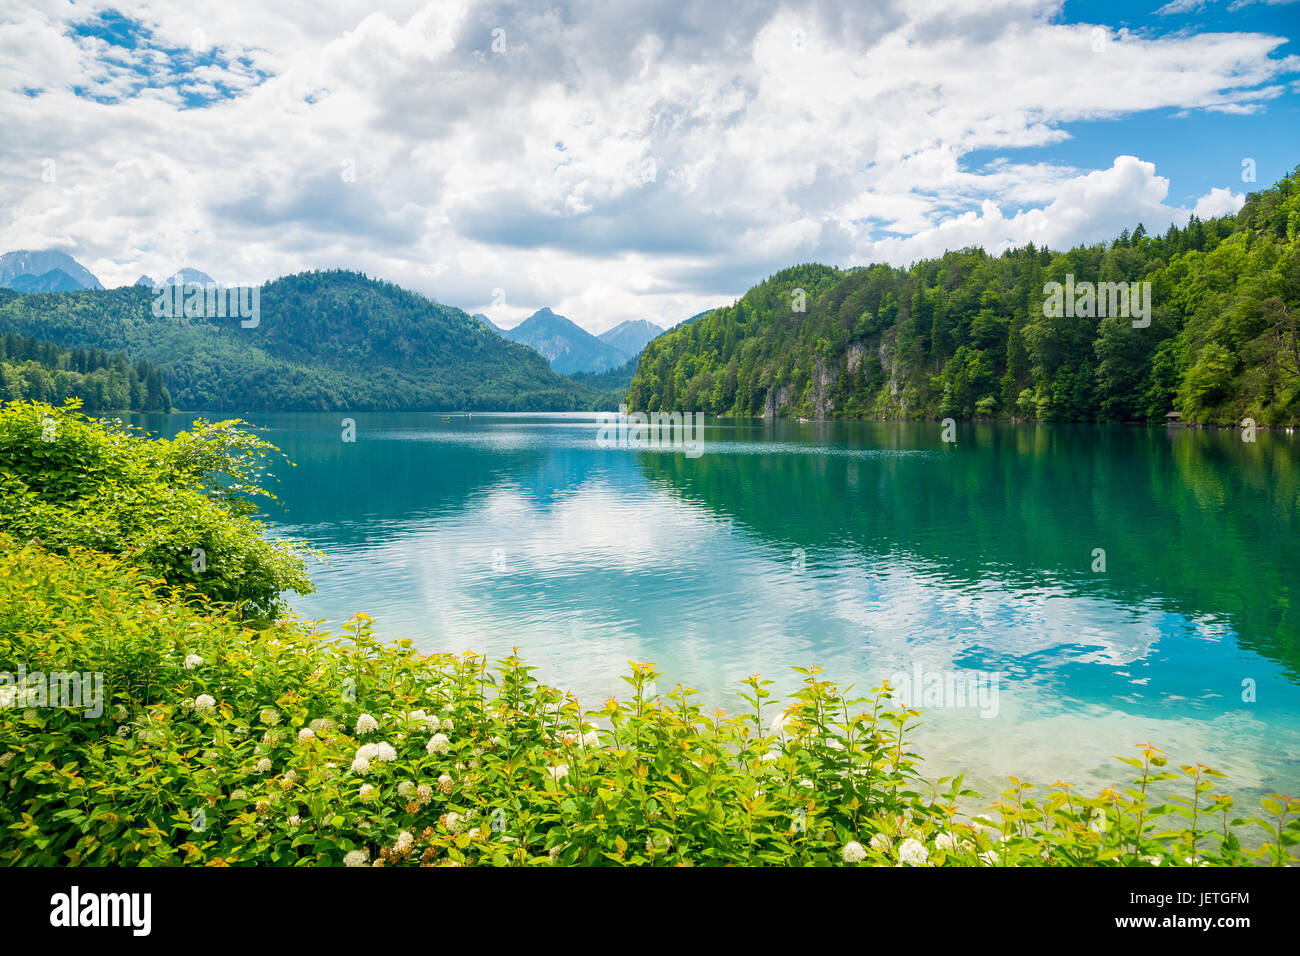 L'Alpsee est un lac en Bavière, Allemagne. Il est situé à proximité des châteaux de Neuschwanstein et d Hoshenschwangau. Banque D'Images